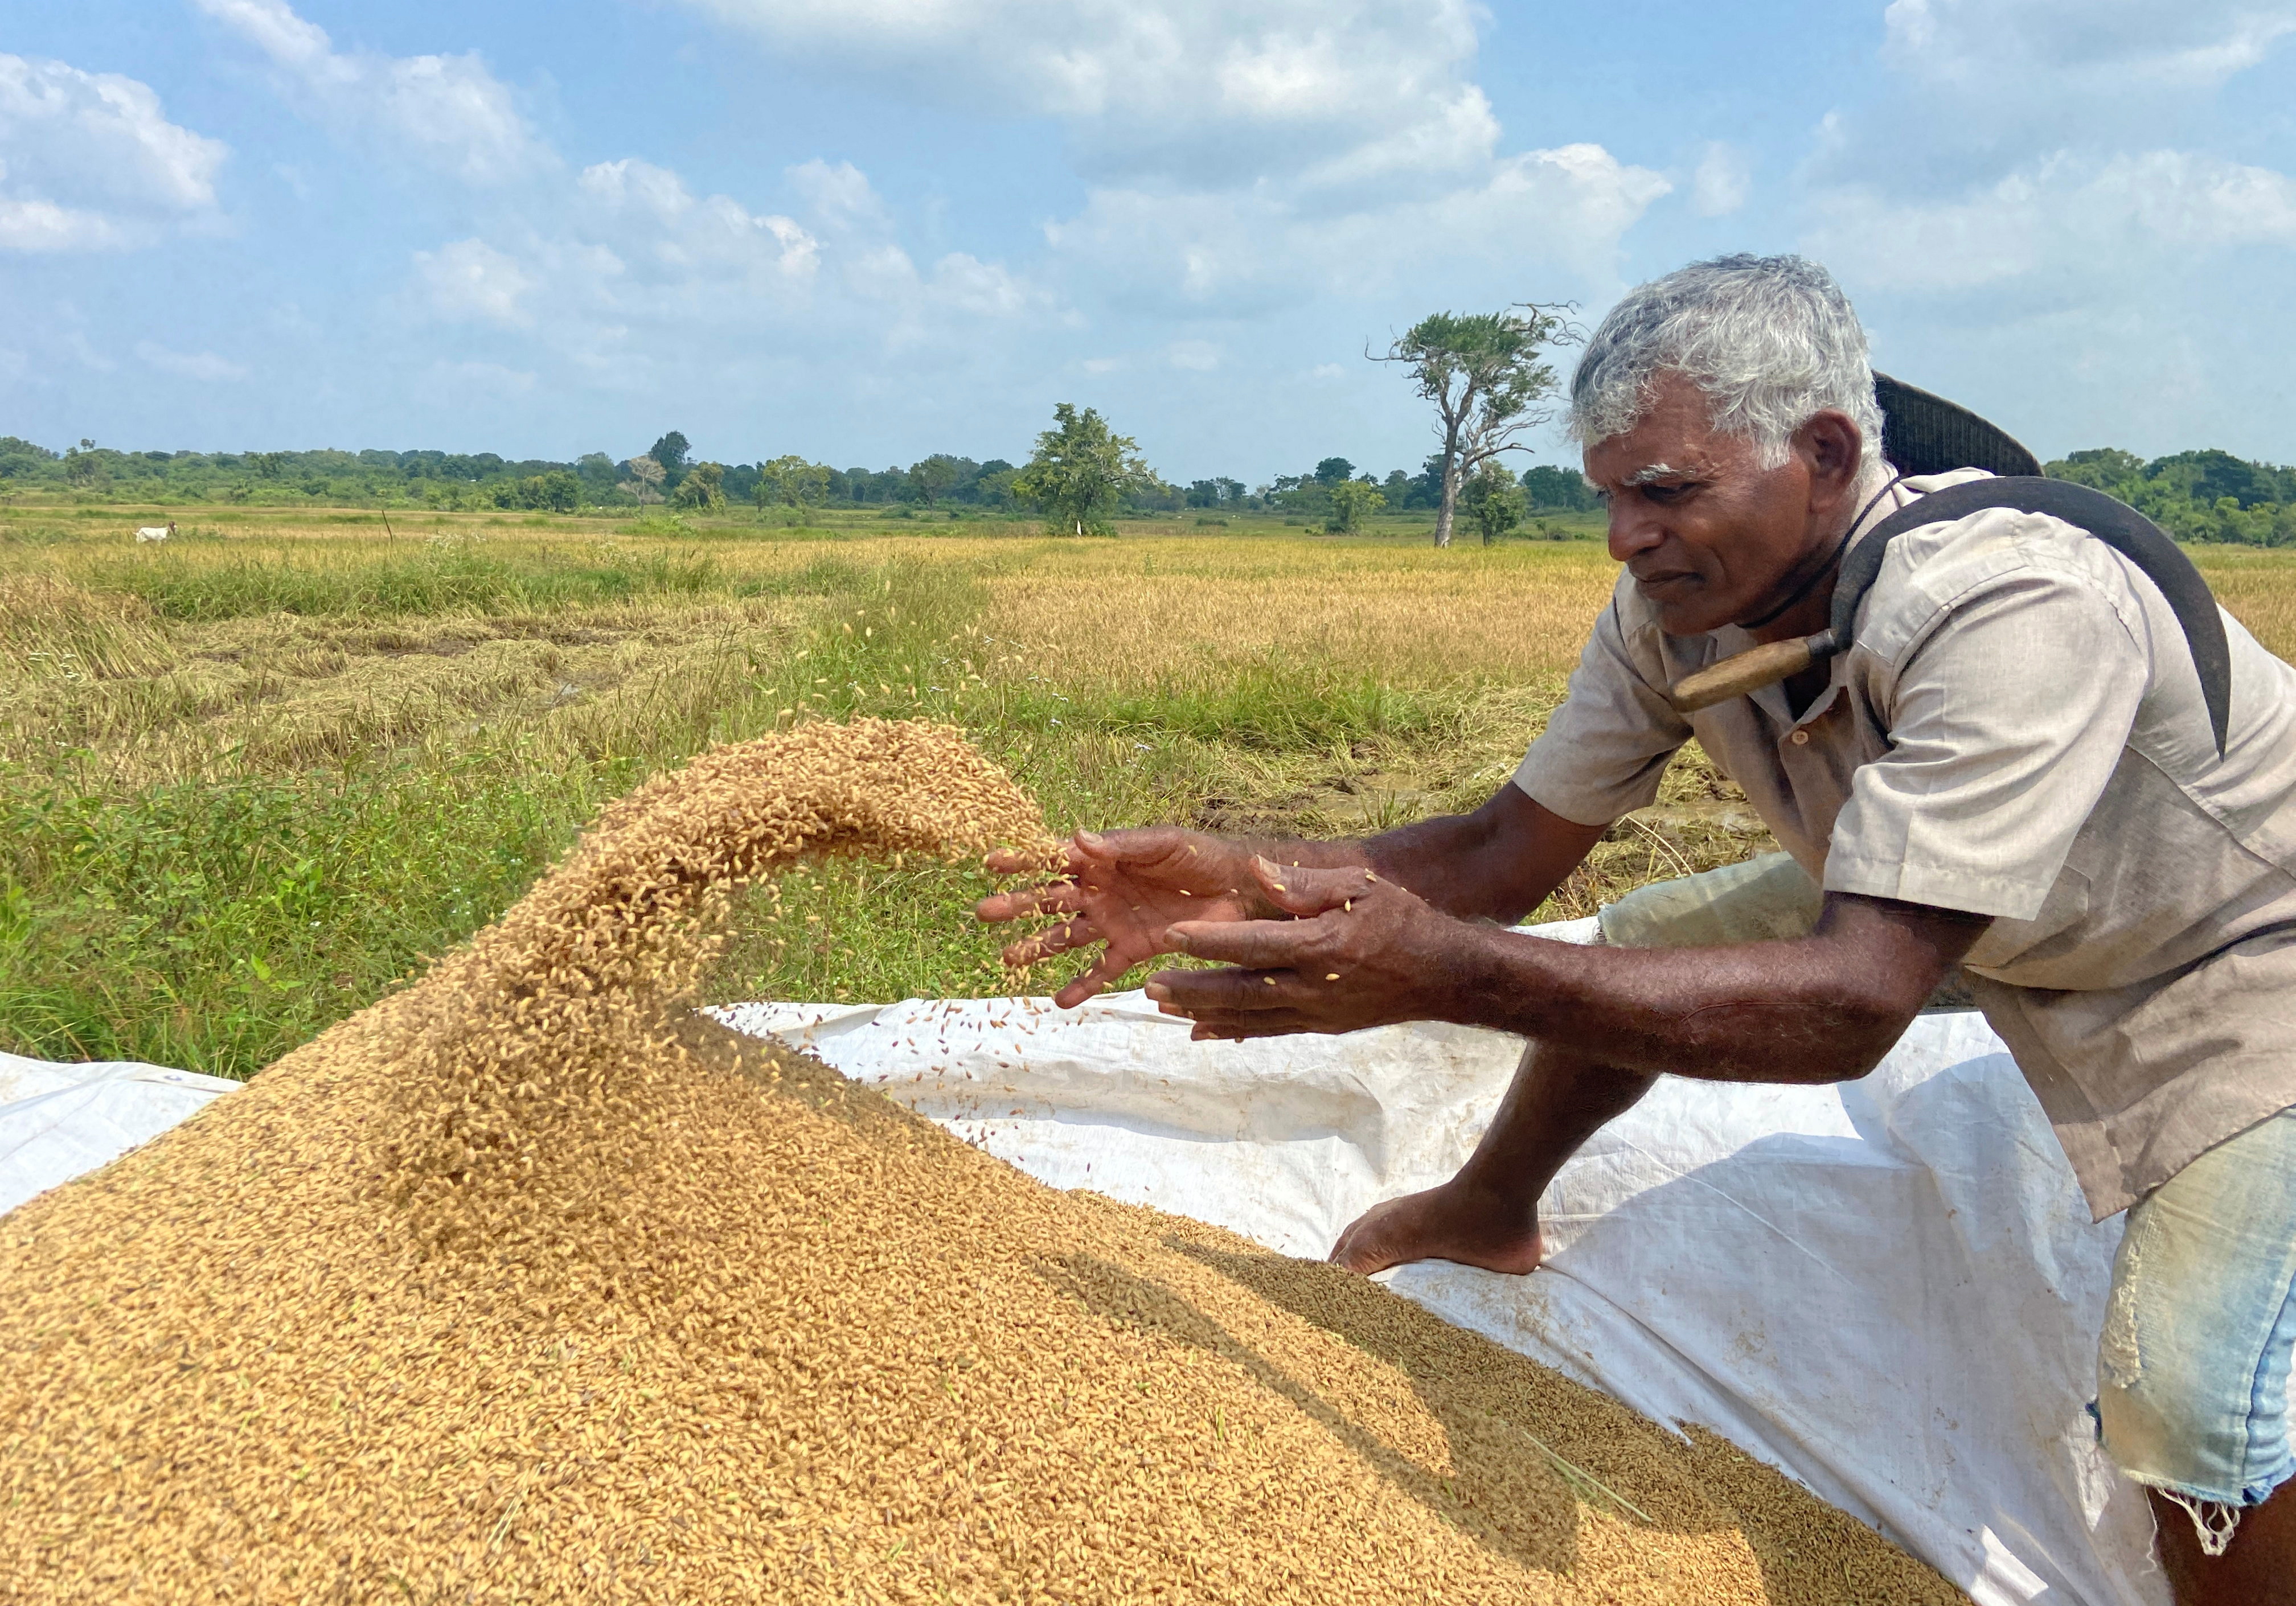 Sri Lankan farmers reel from fertiliser ban, as government support ebbs